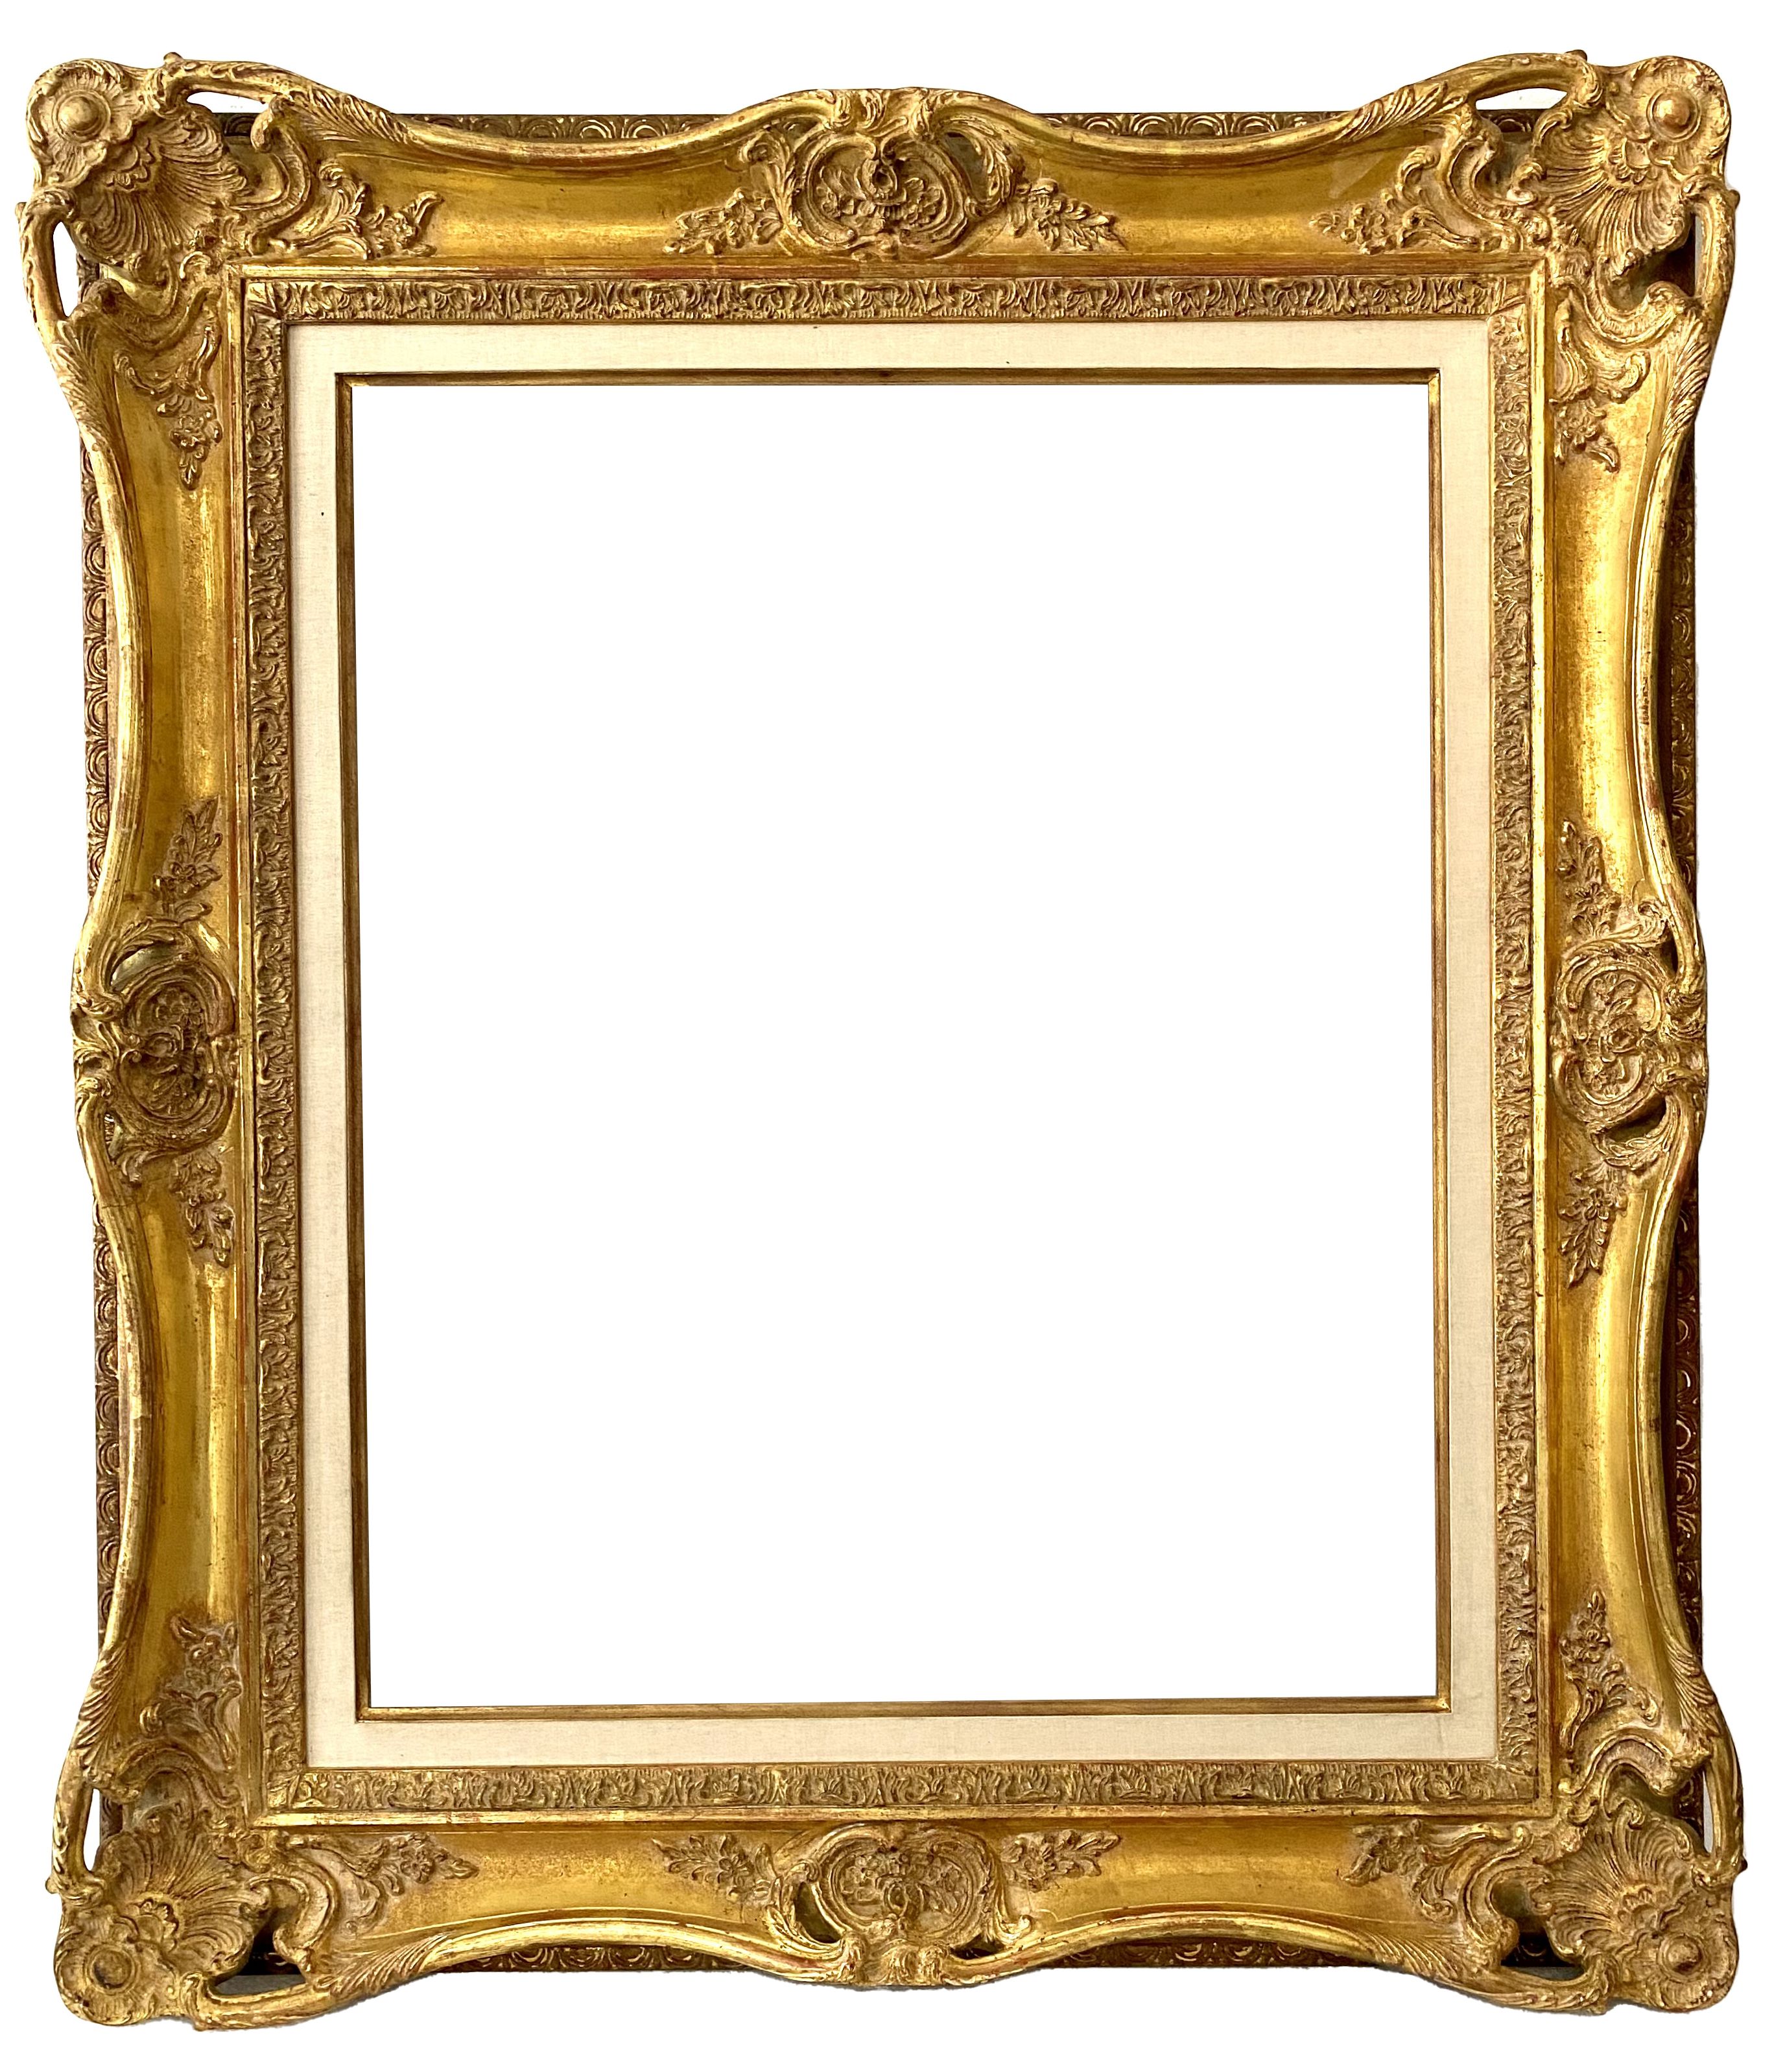 Cadre de style Louis XV - 61,60 x 50,80 - REF - 1541